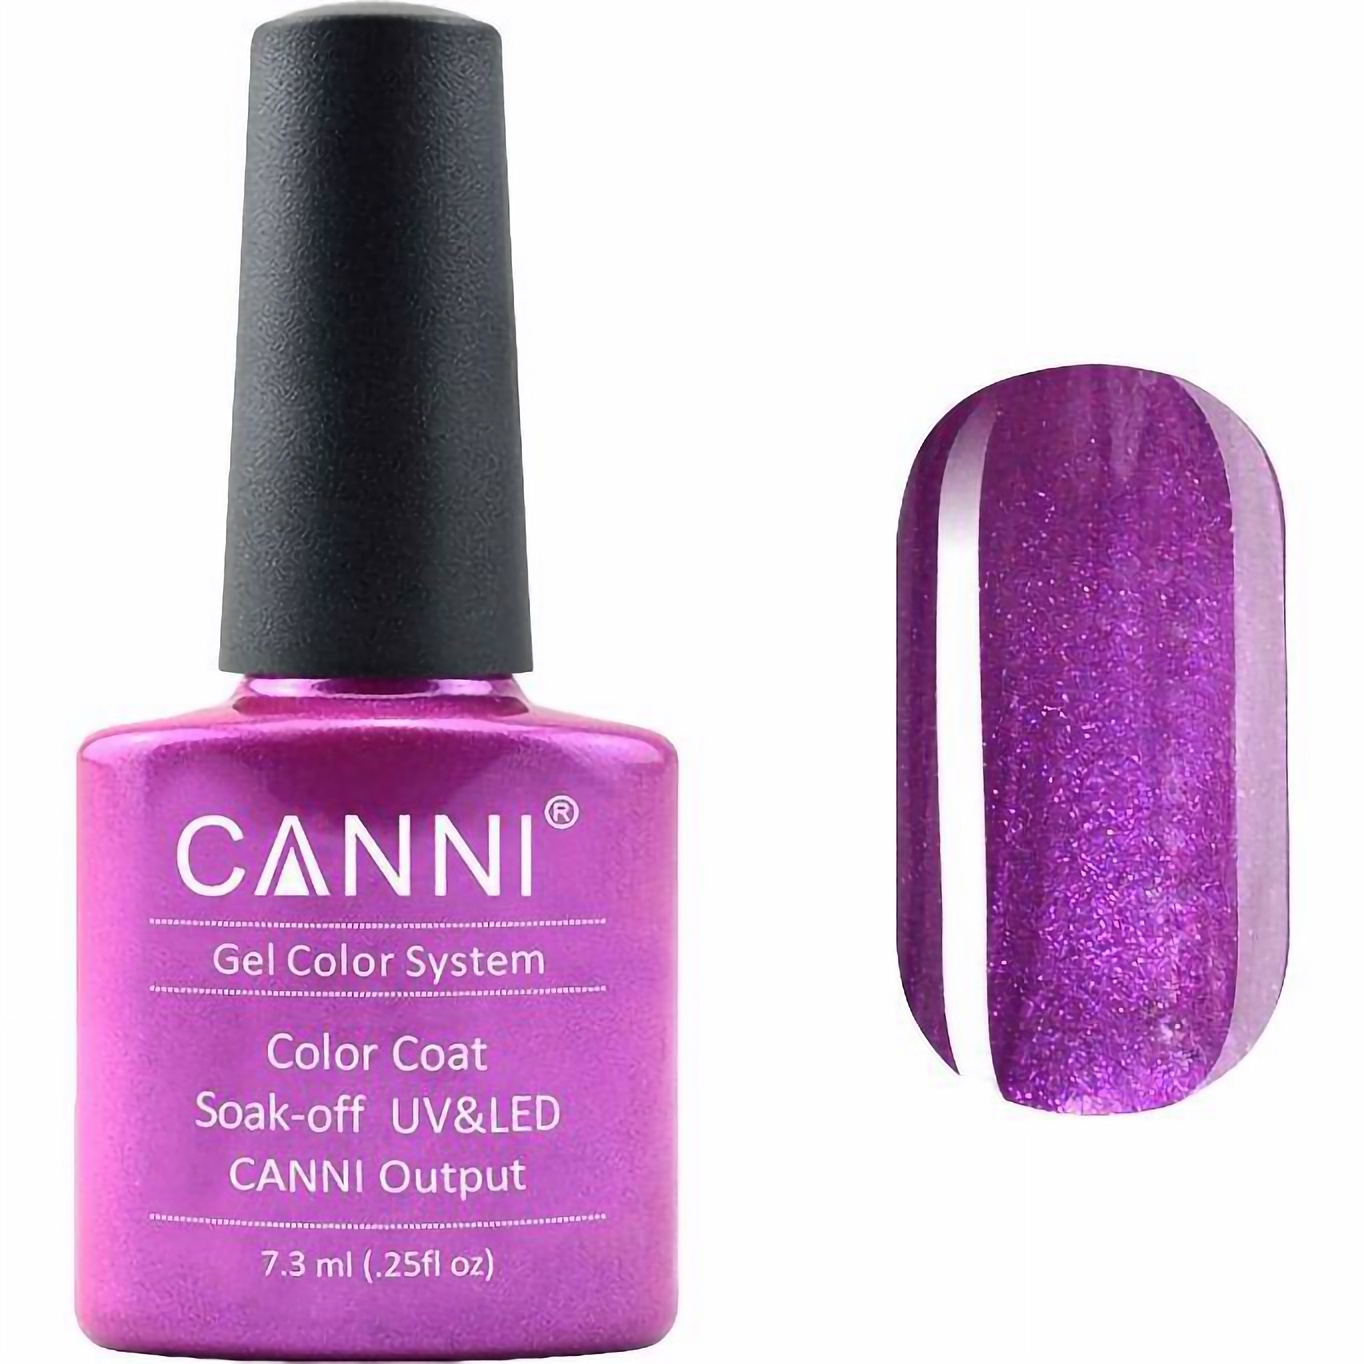 Гель-лак Canni Color Coat Soak-off UV&LED 193 бузковий перламутр 7.3 мл - фото 1